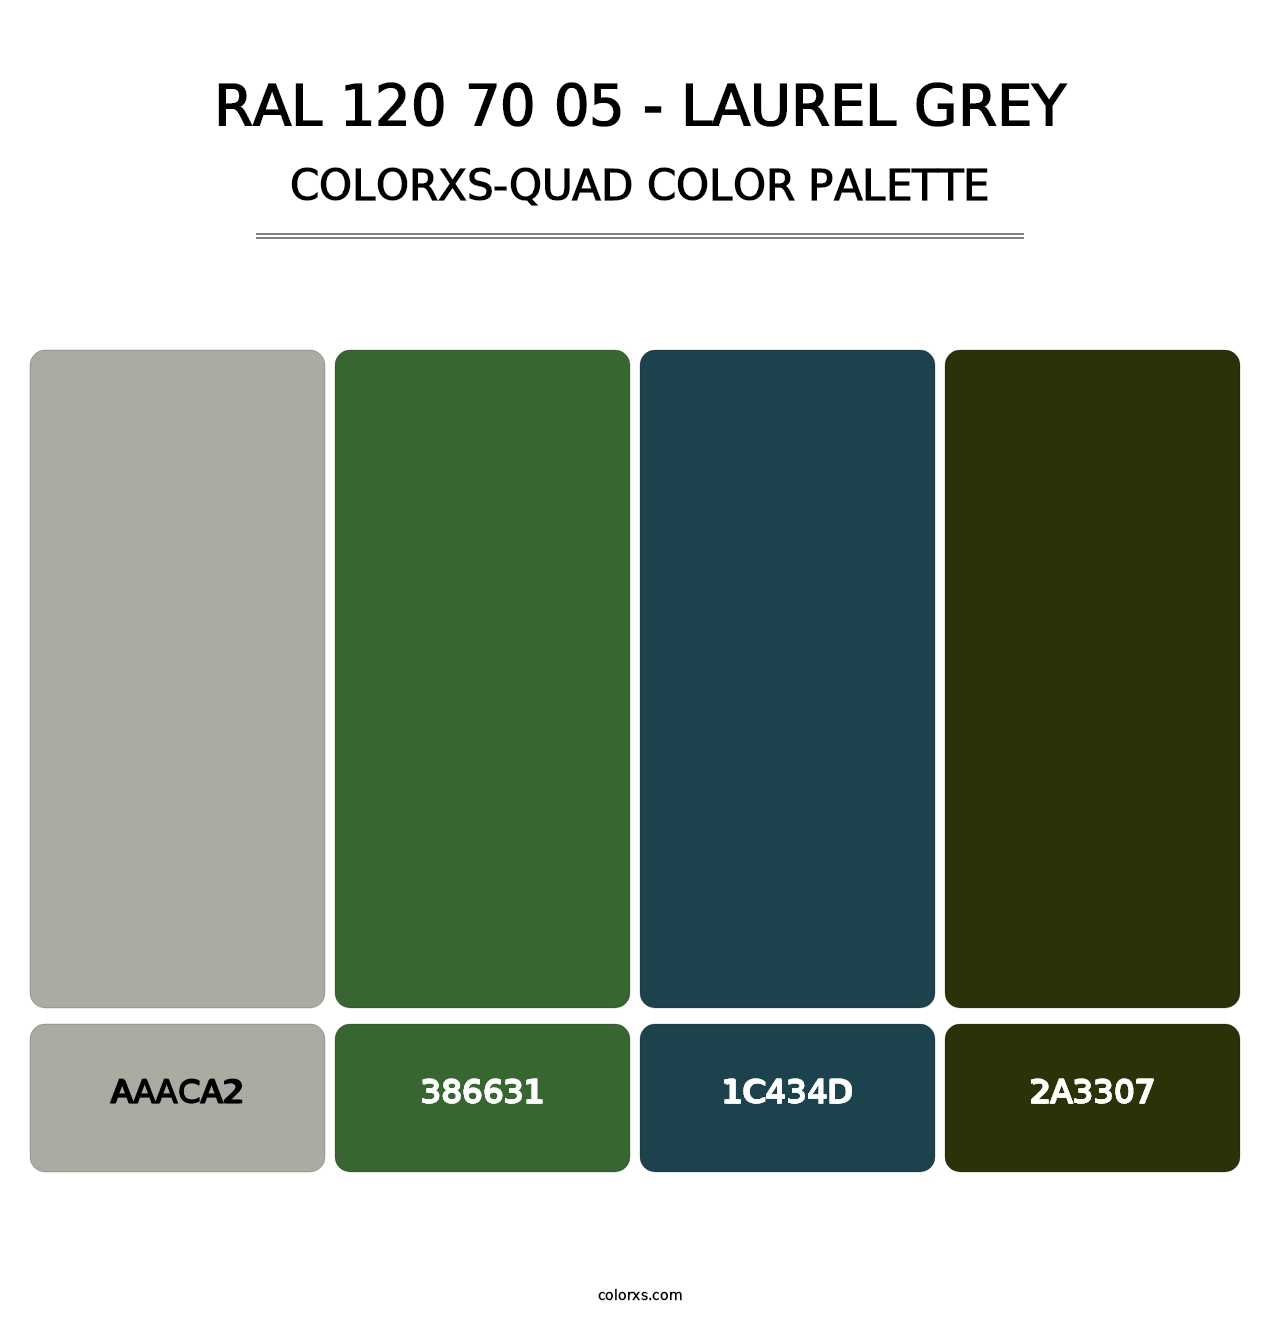 RAL 120 70 05 - Laurel Grey - Colorxs Quad Palette